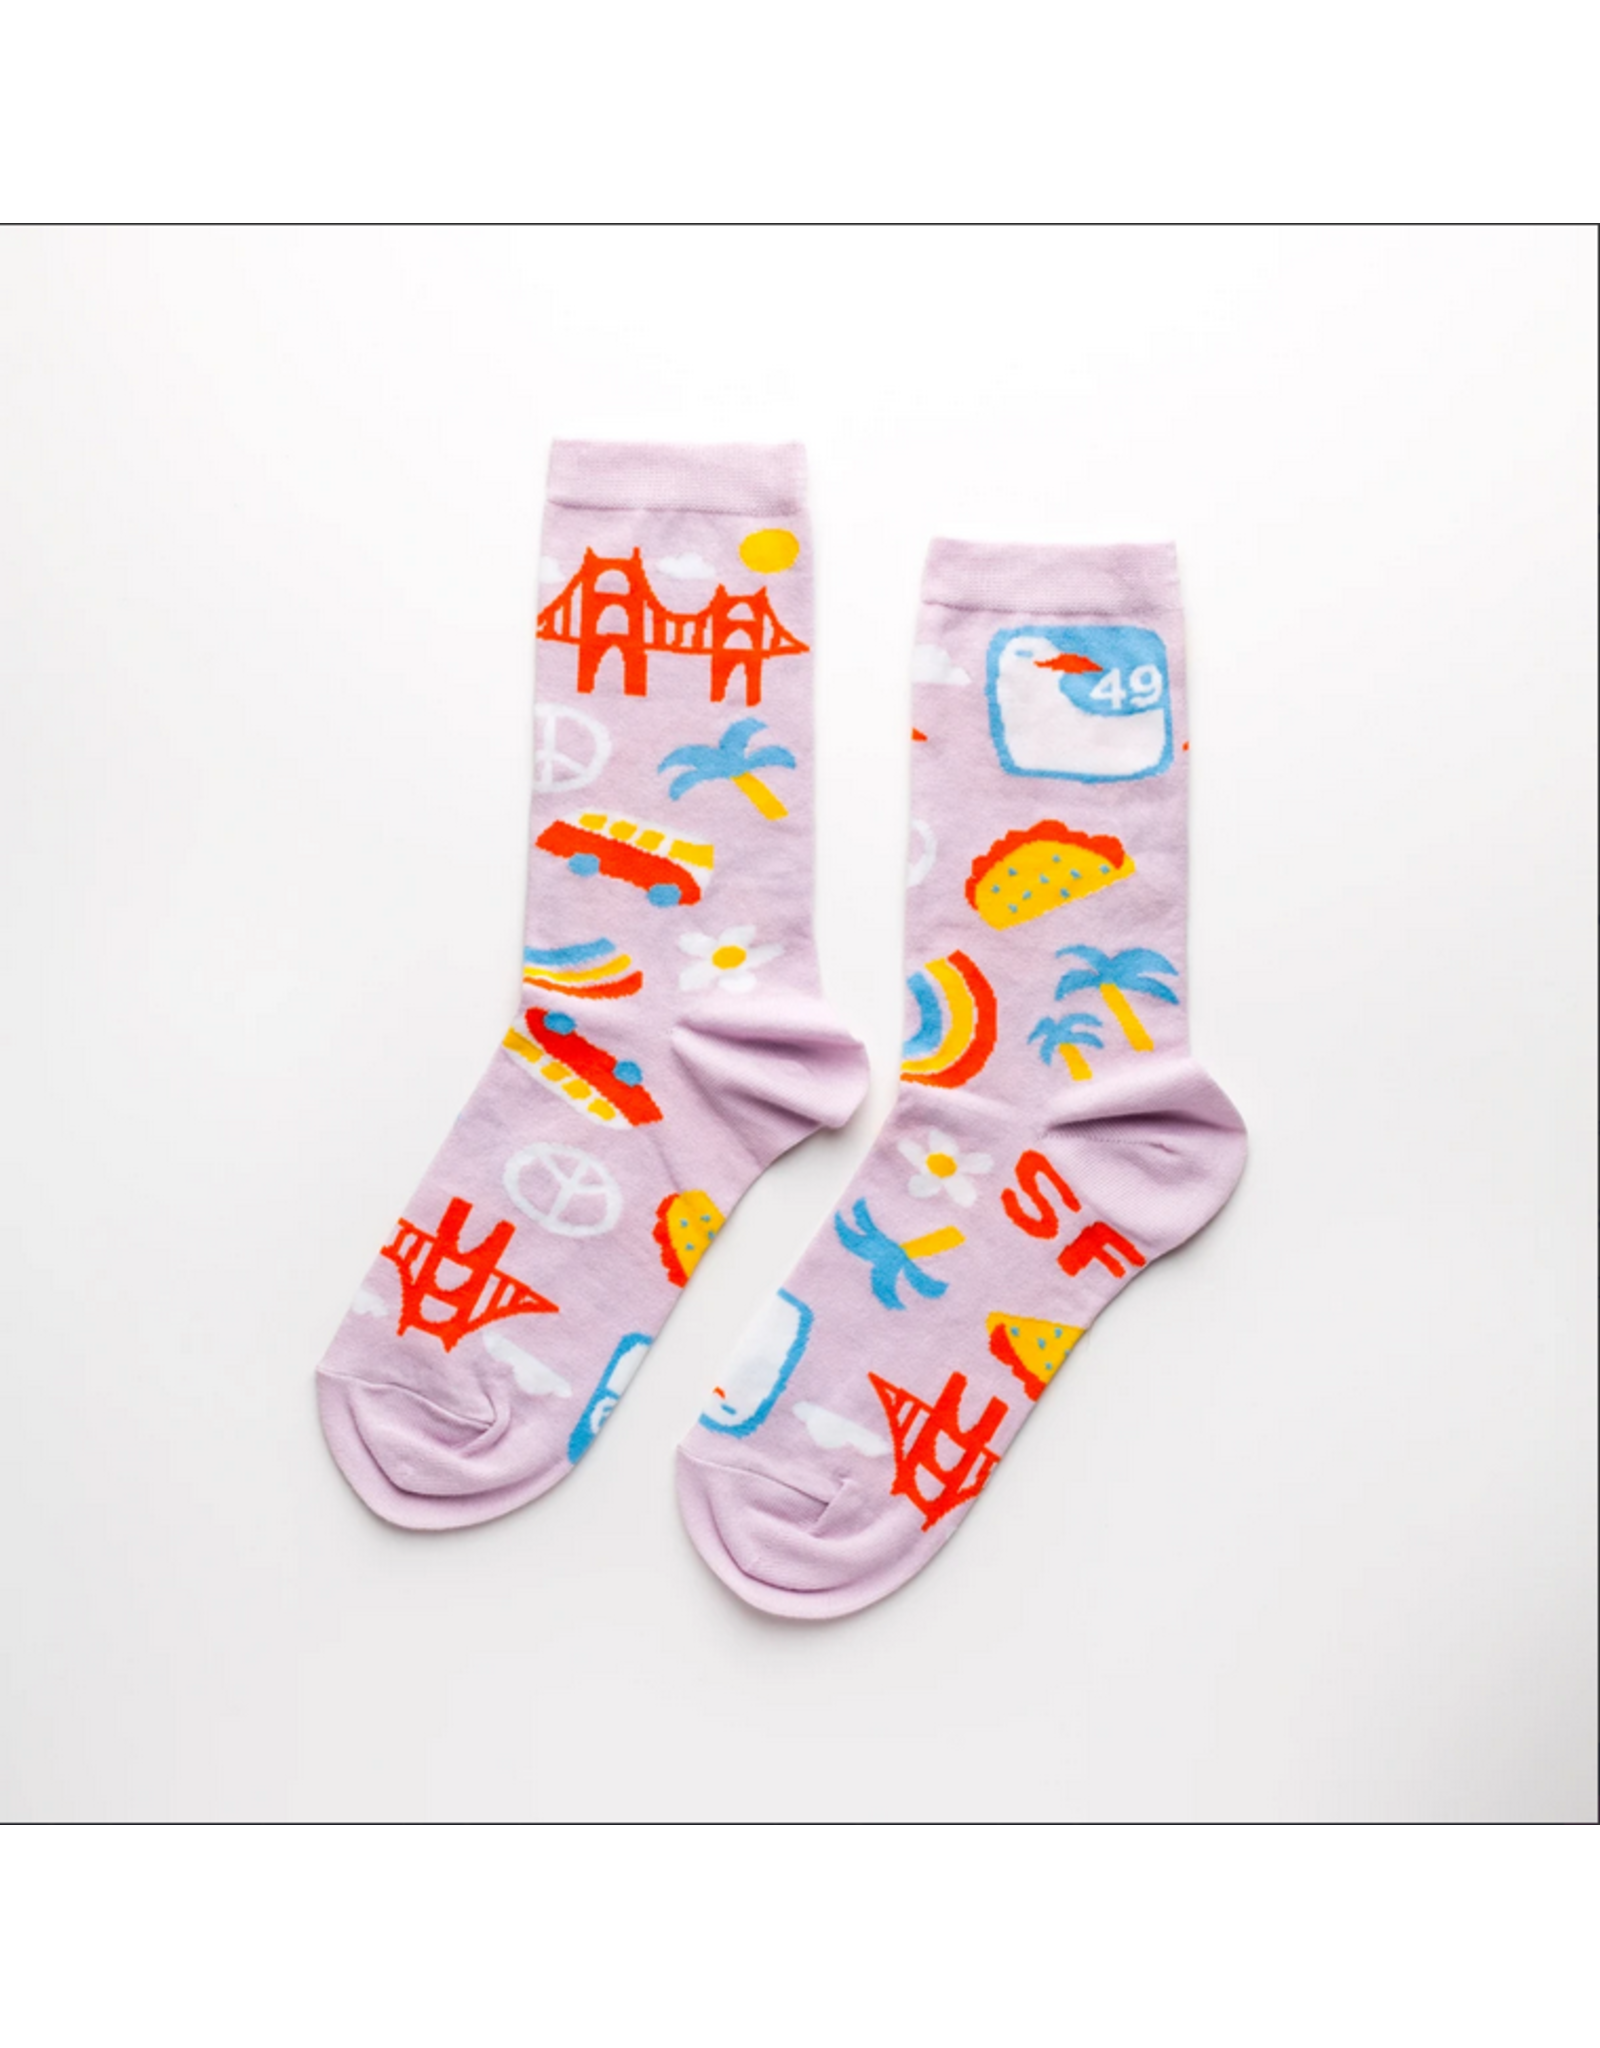 Women's Socks - SF